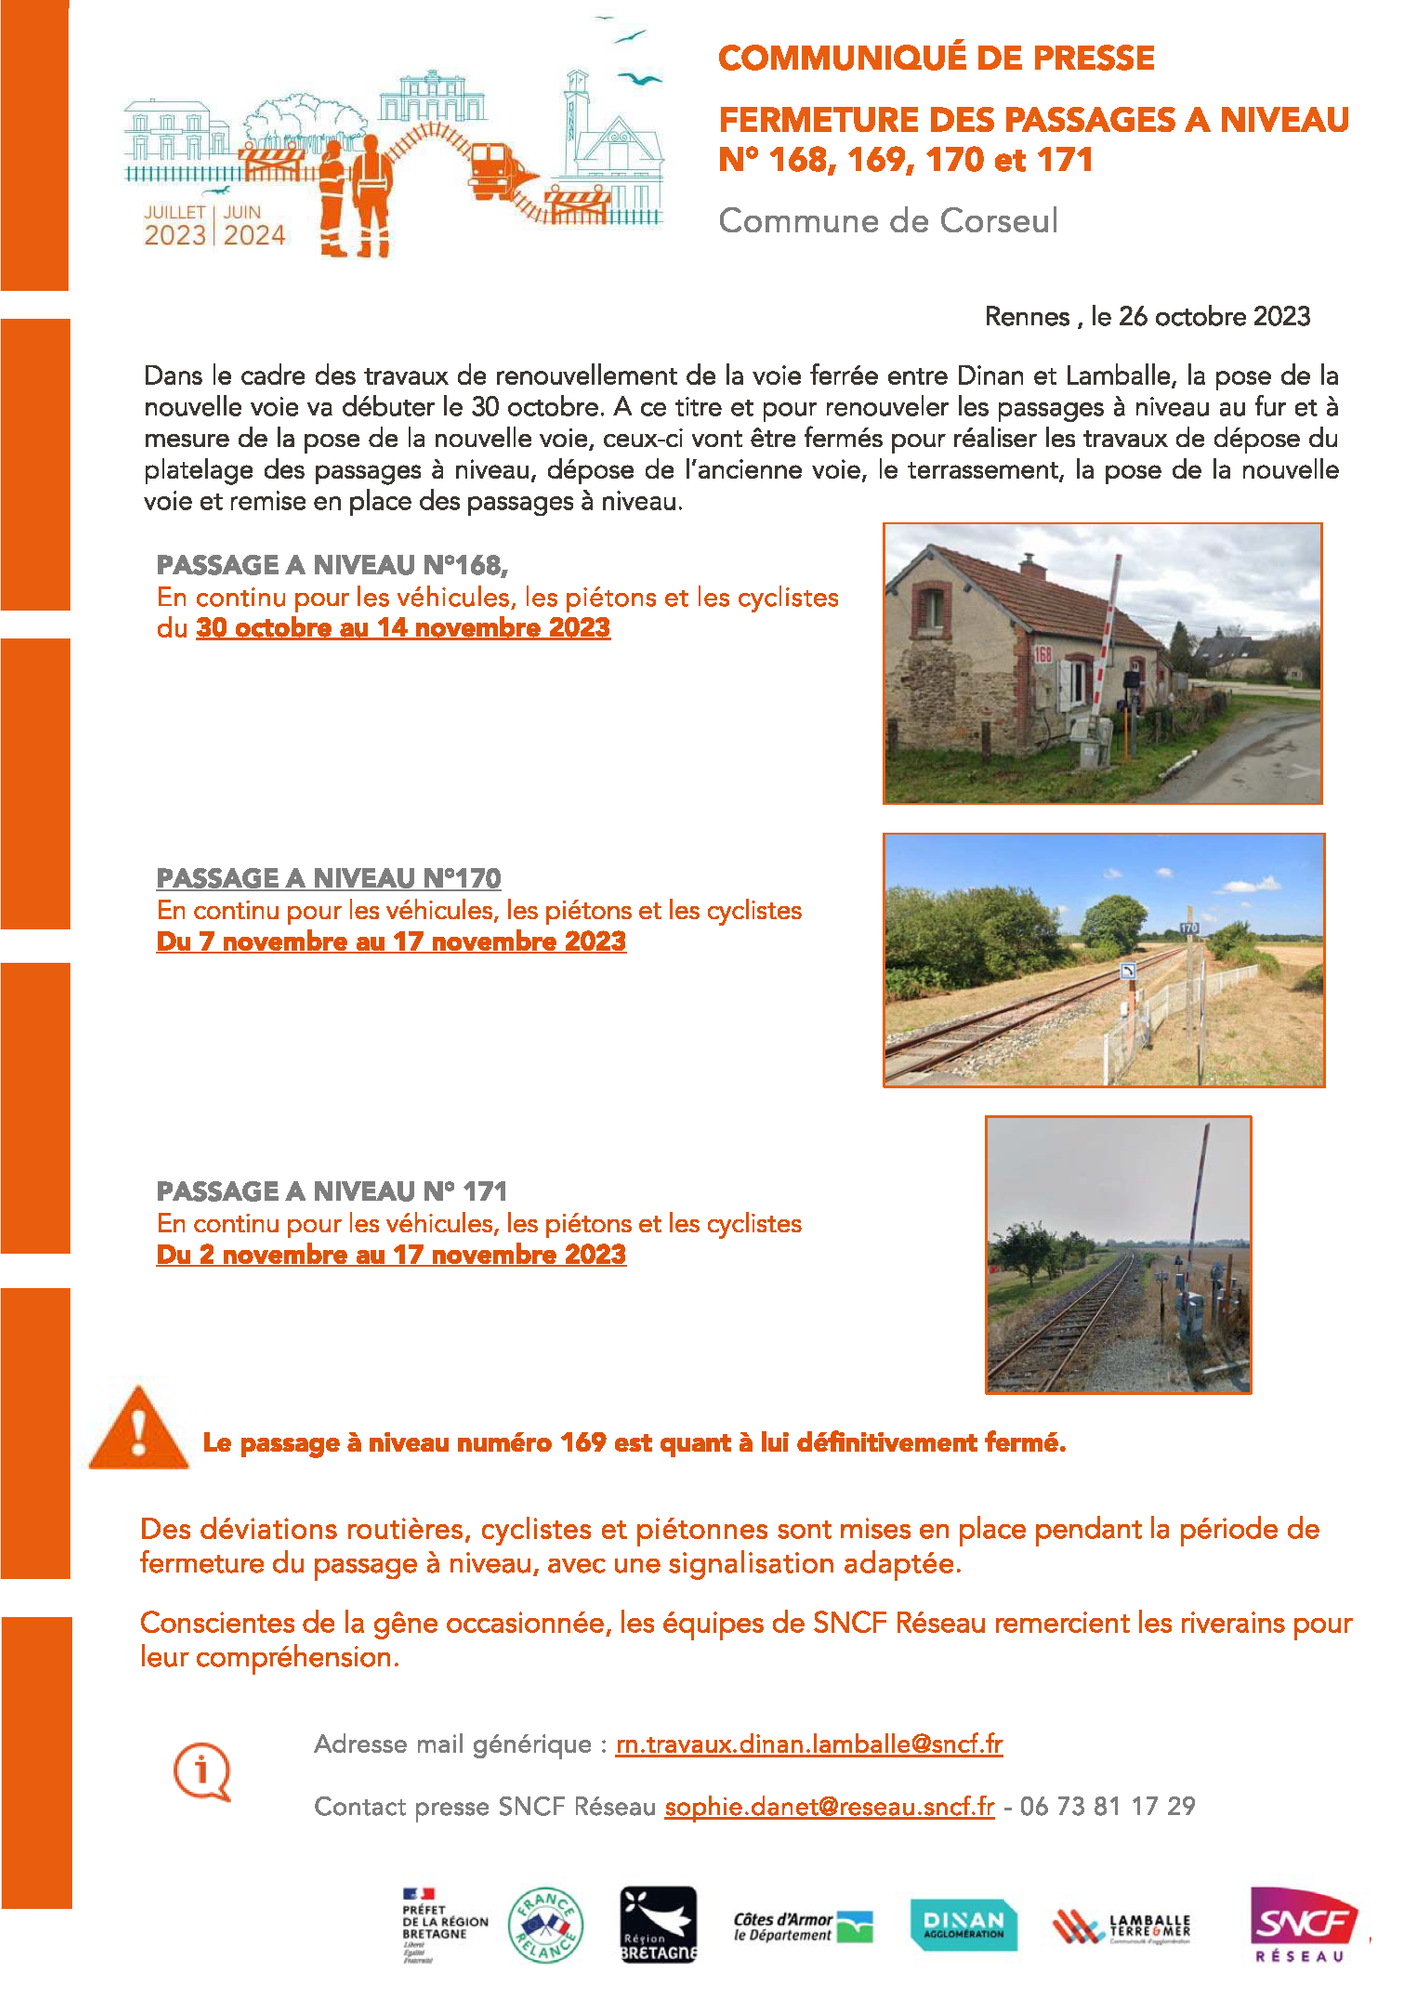 Fermeture temporaire des passages à niveau commune de Corseul - Fermeture des passages à niveau 168, 169, 170 et 171 commune de Corseul